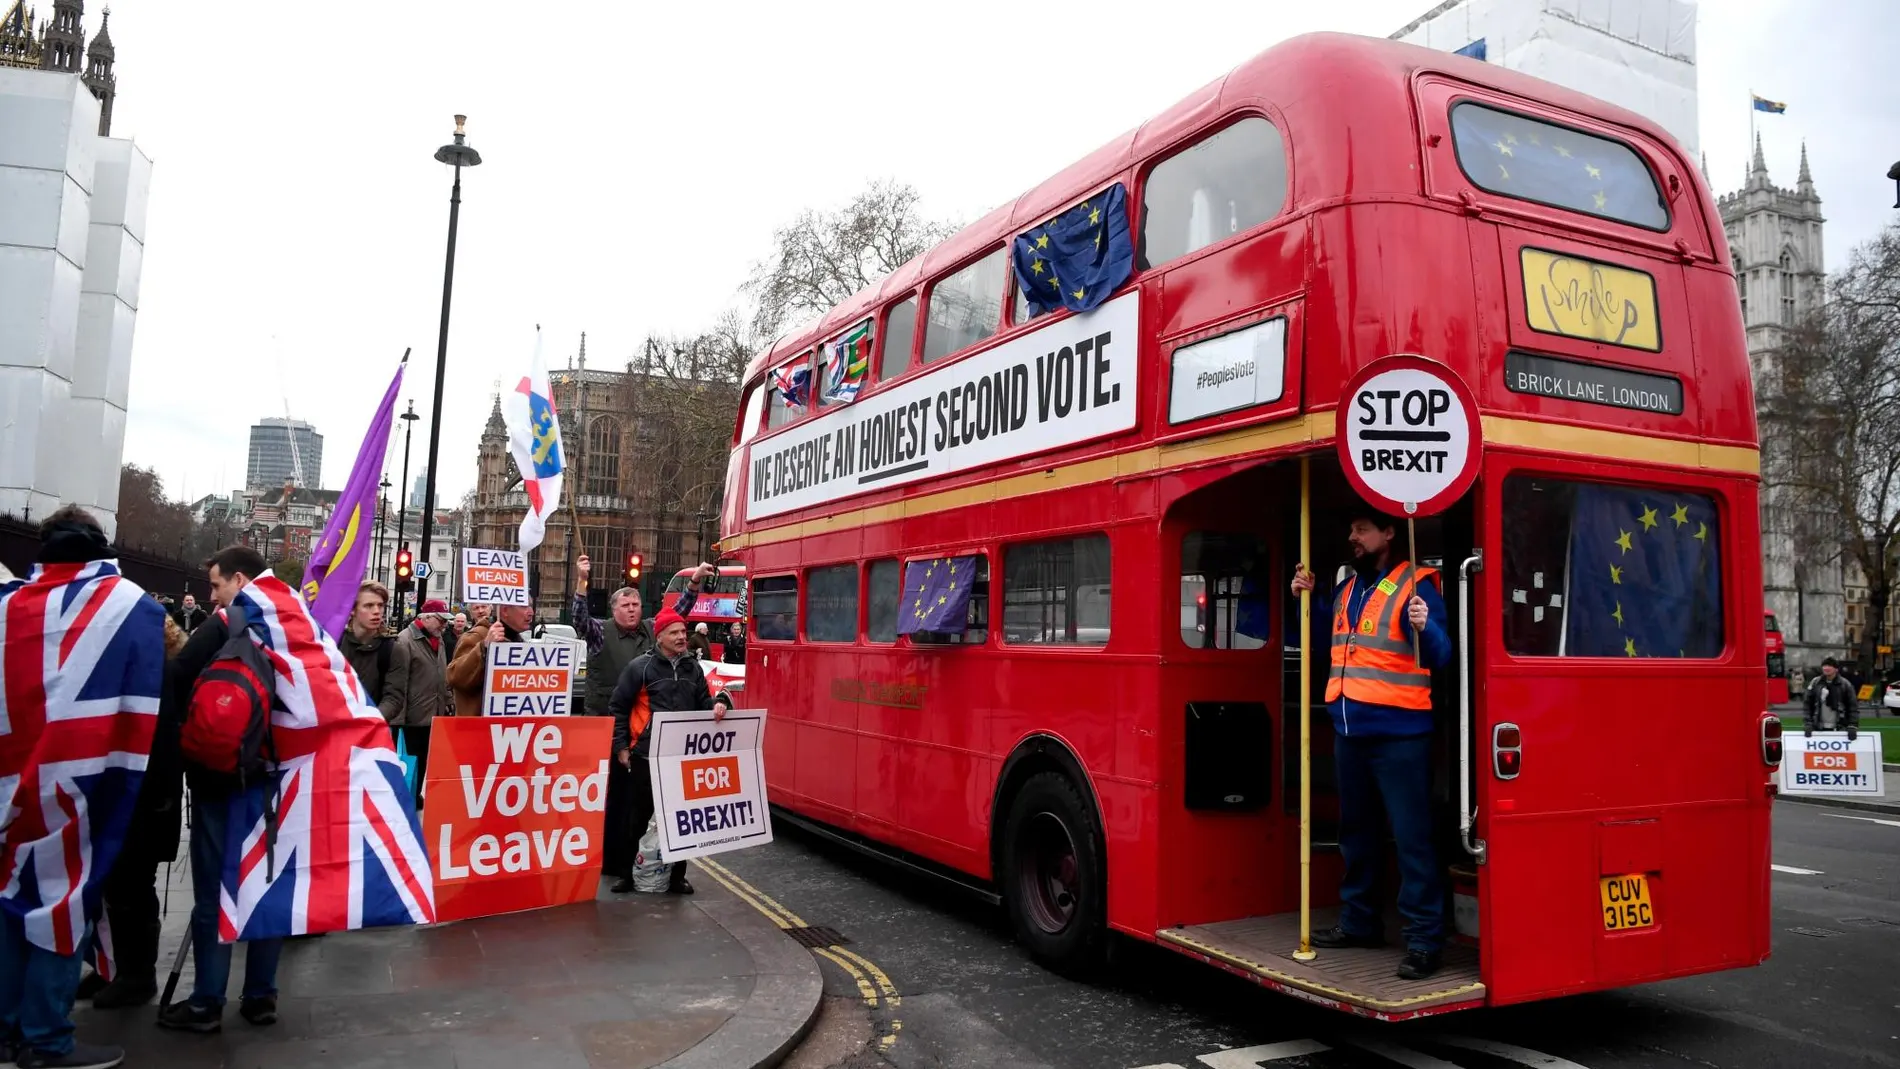 Manifestantes a favor del Brexit protestan frente a un autobús en el que pueden leerse consignas contrarias a la salida del país de la Unión Europea